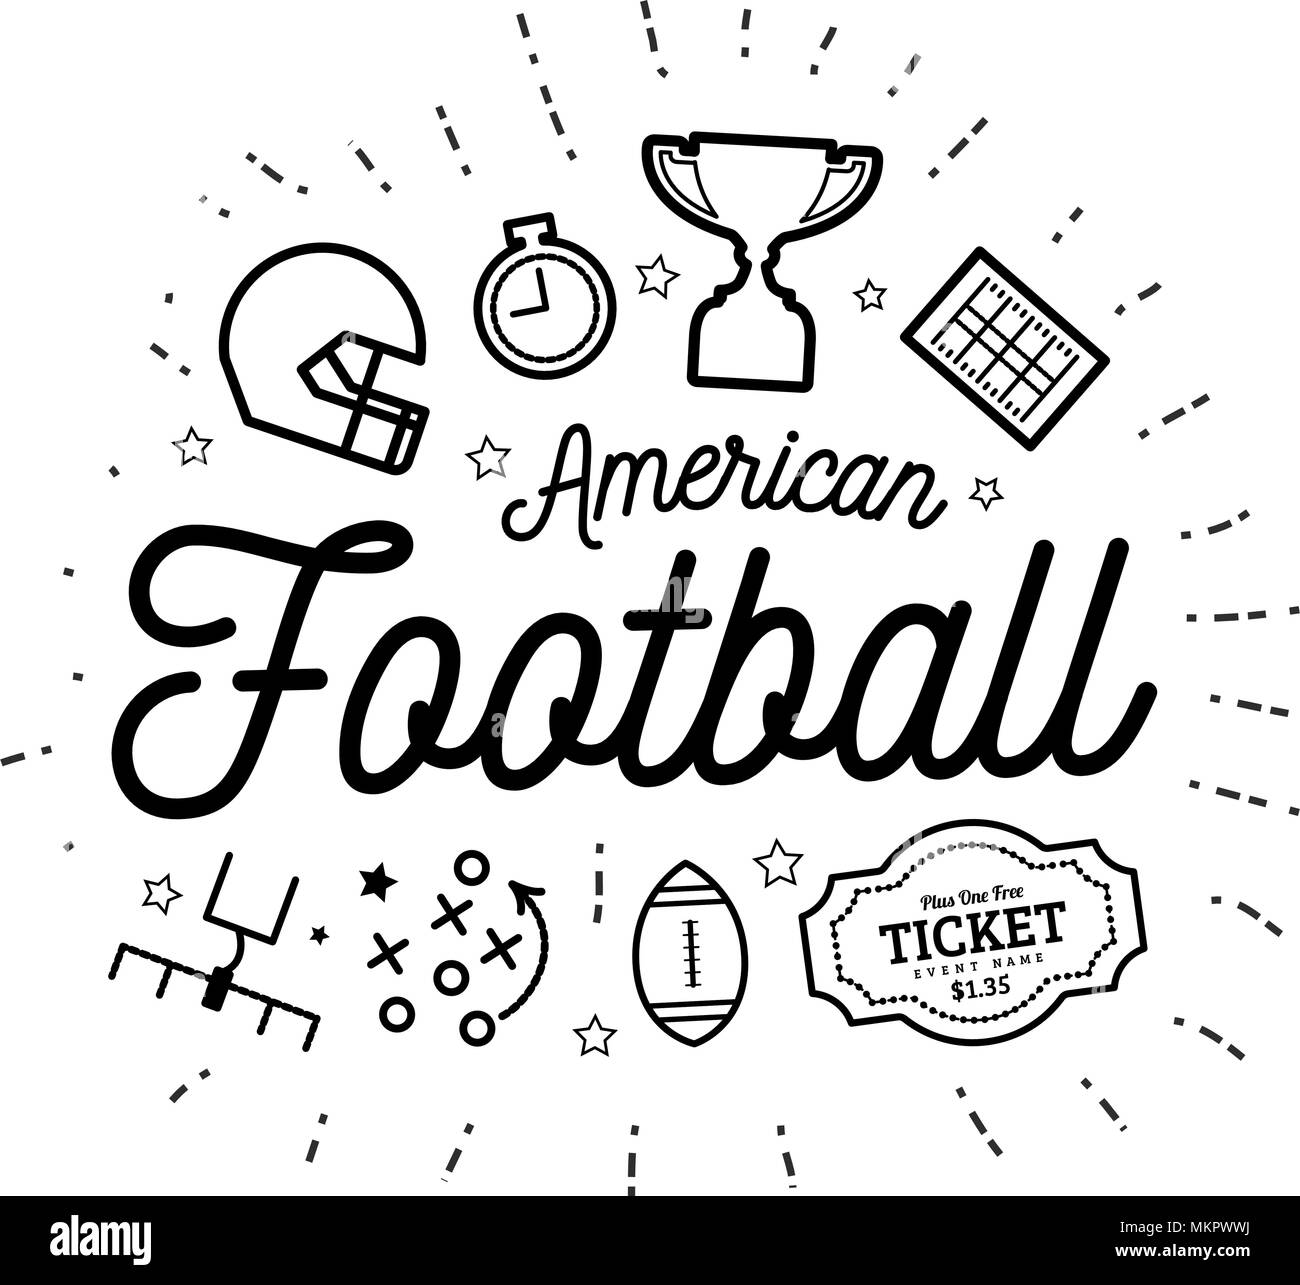 Football americano. Illustrazione Vettoriale nello stile di linee sottili con icone di piana in bianco e nero Illustrazione Vettoriale